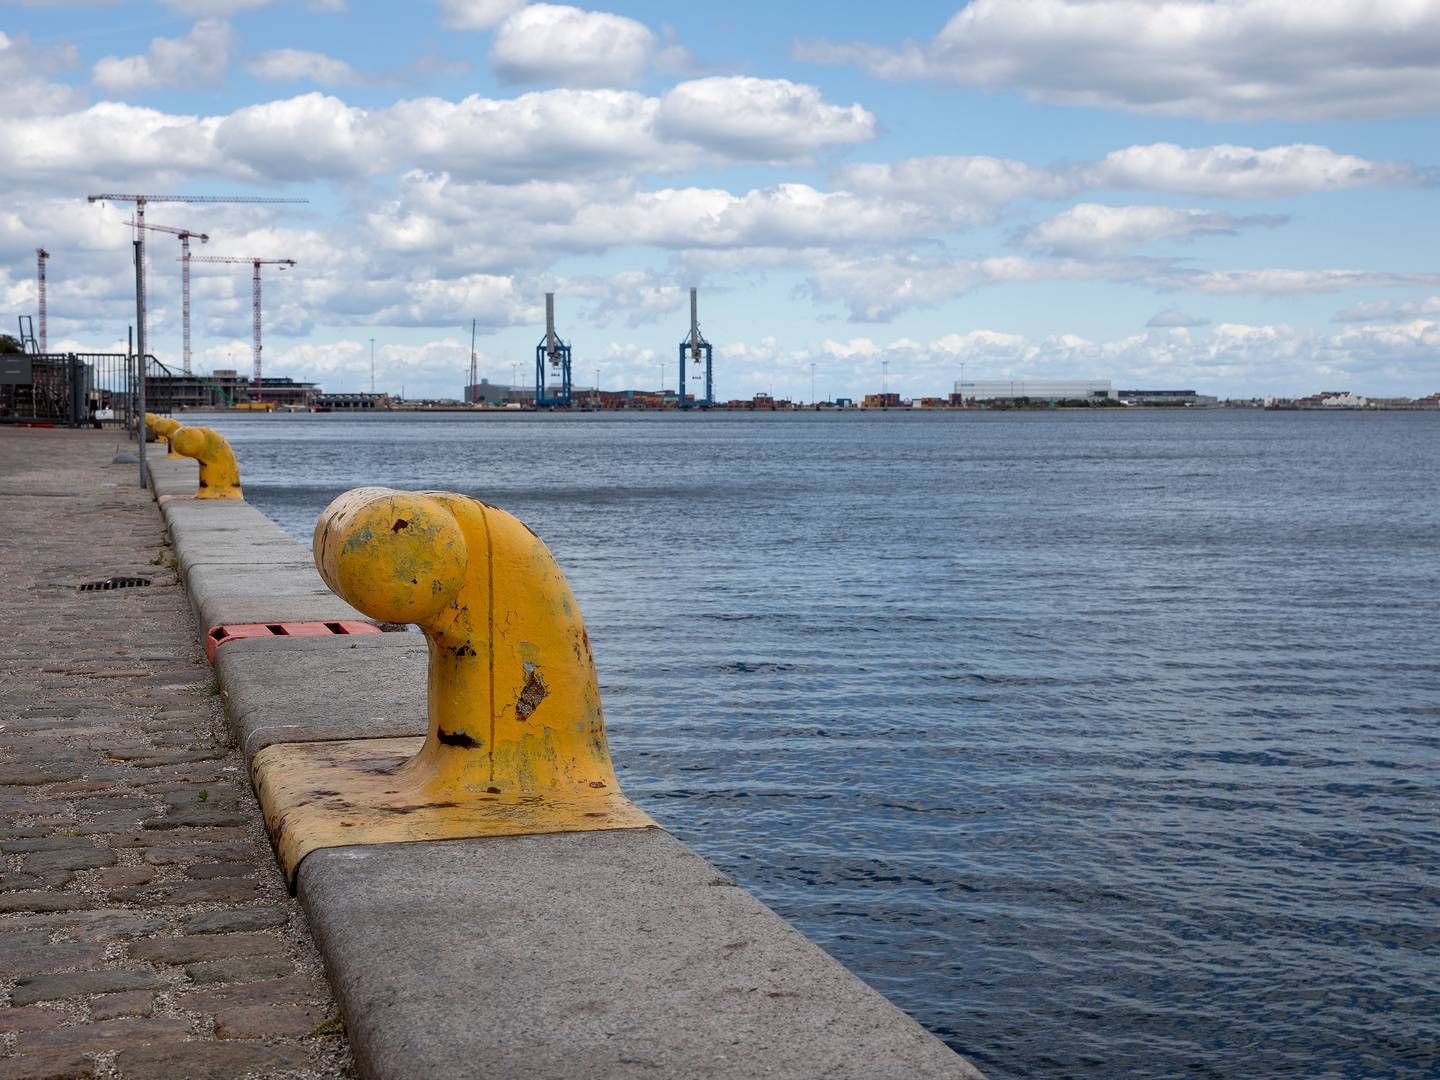 Det nye havnepartnerskab bliver præsenteret ved Nordhavn i København. | Foto: Finn Frandsen/Ritzau Scanpix